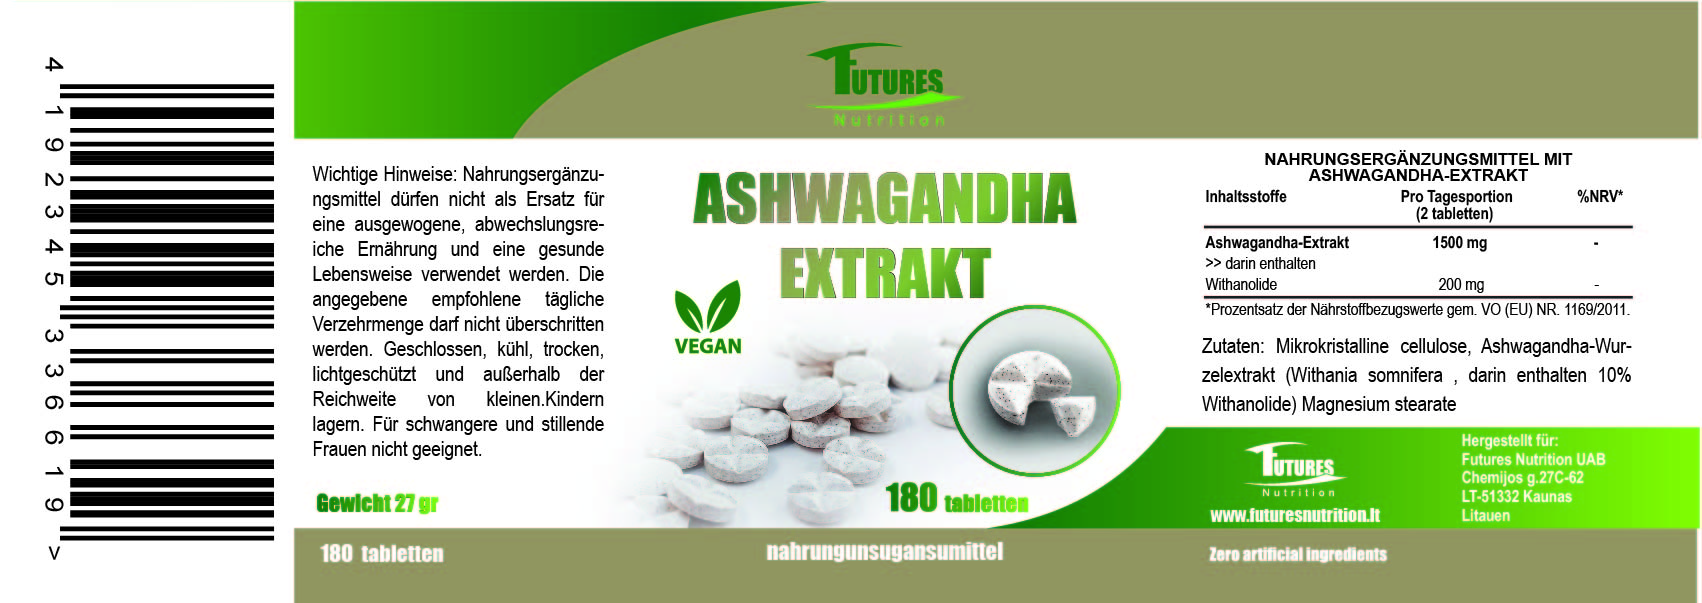 Ashwagandha estratto 180 compresse - Facile da affrontare il livello di stress